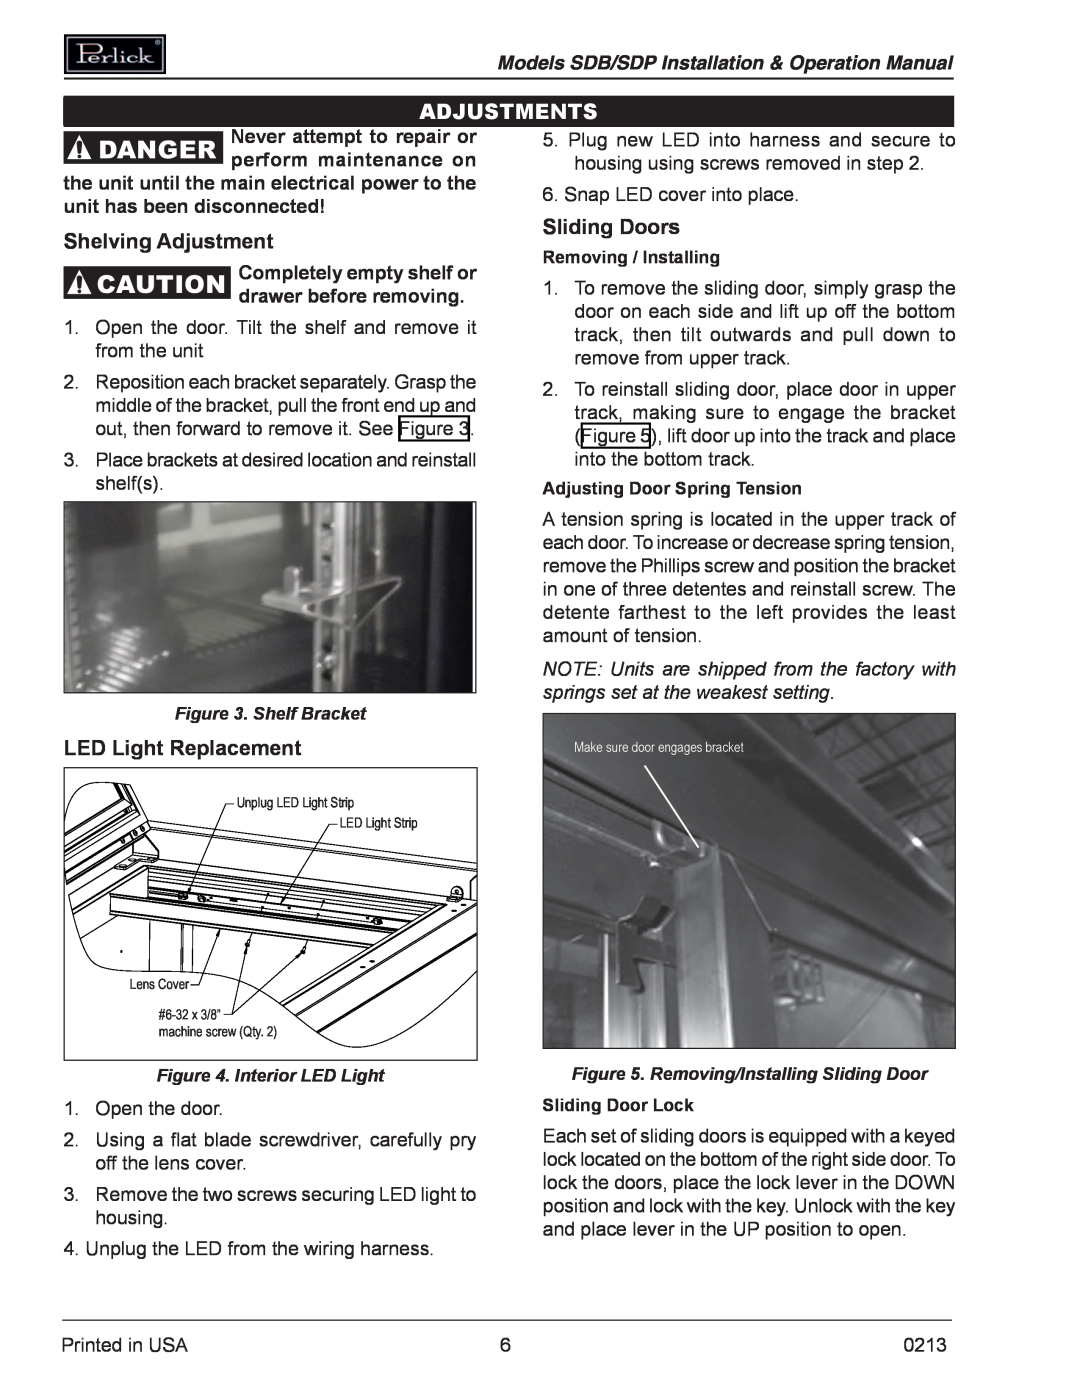 Perlick SDBR48 operation manual Danger, Adjustments, Sliding Doors, Shelving Adjustment, LED Light Replacement 